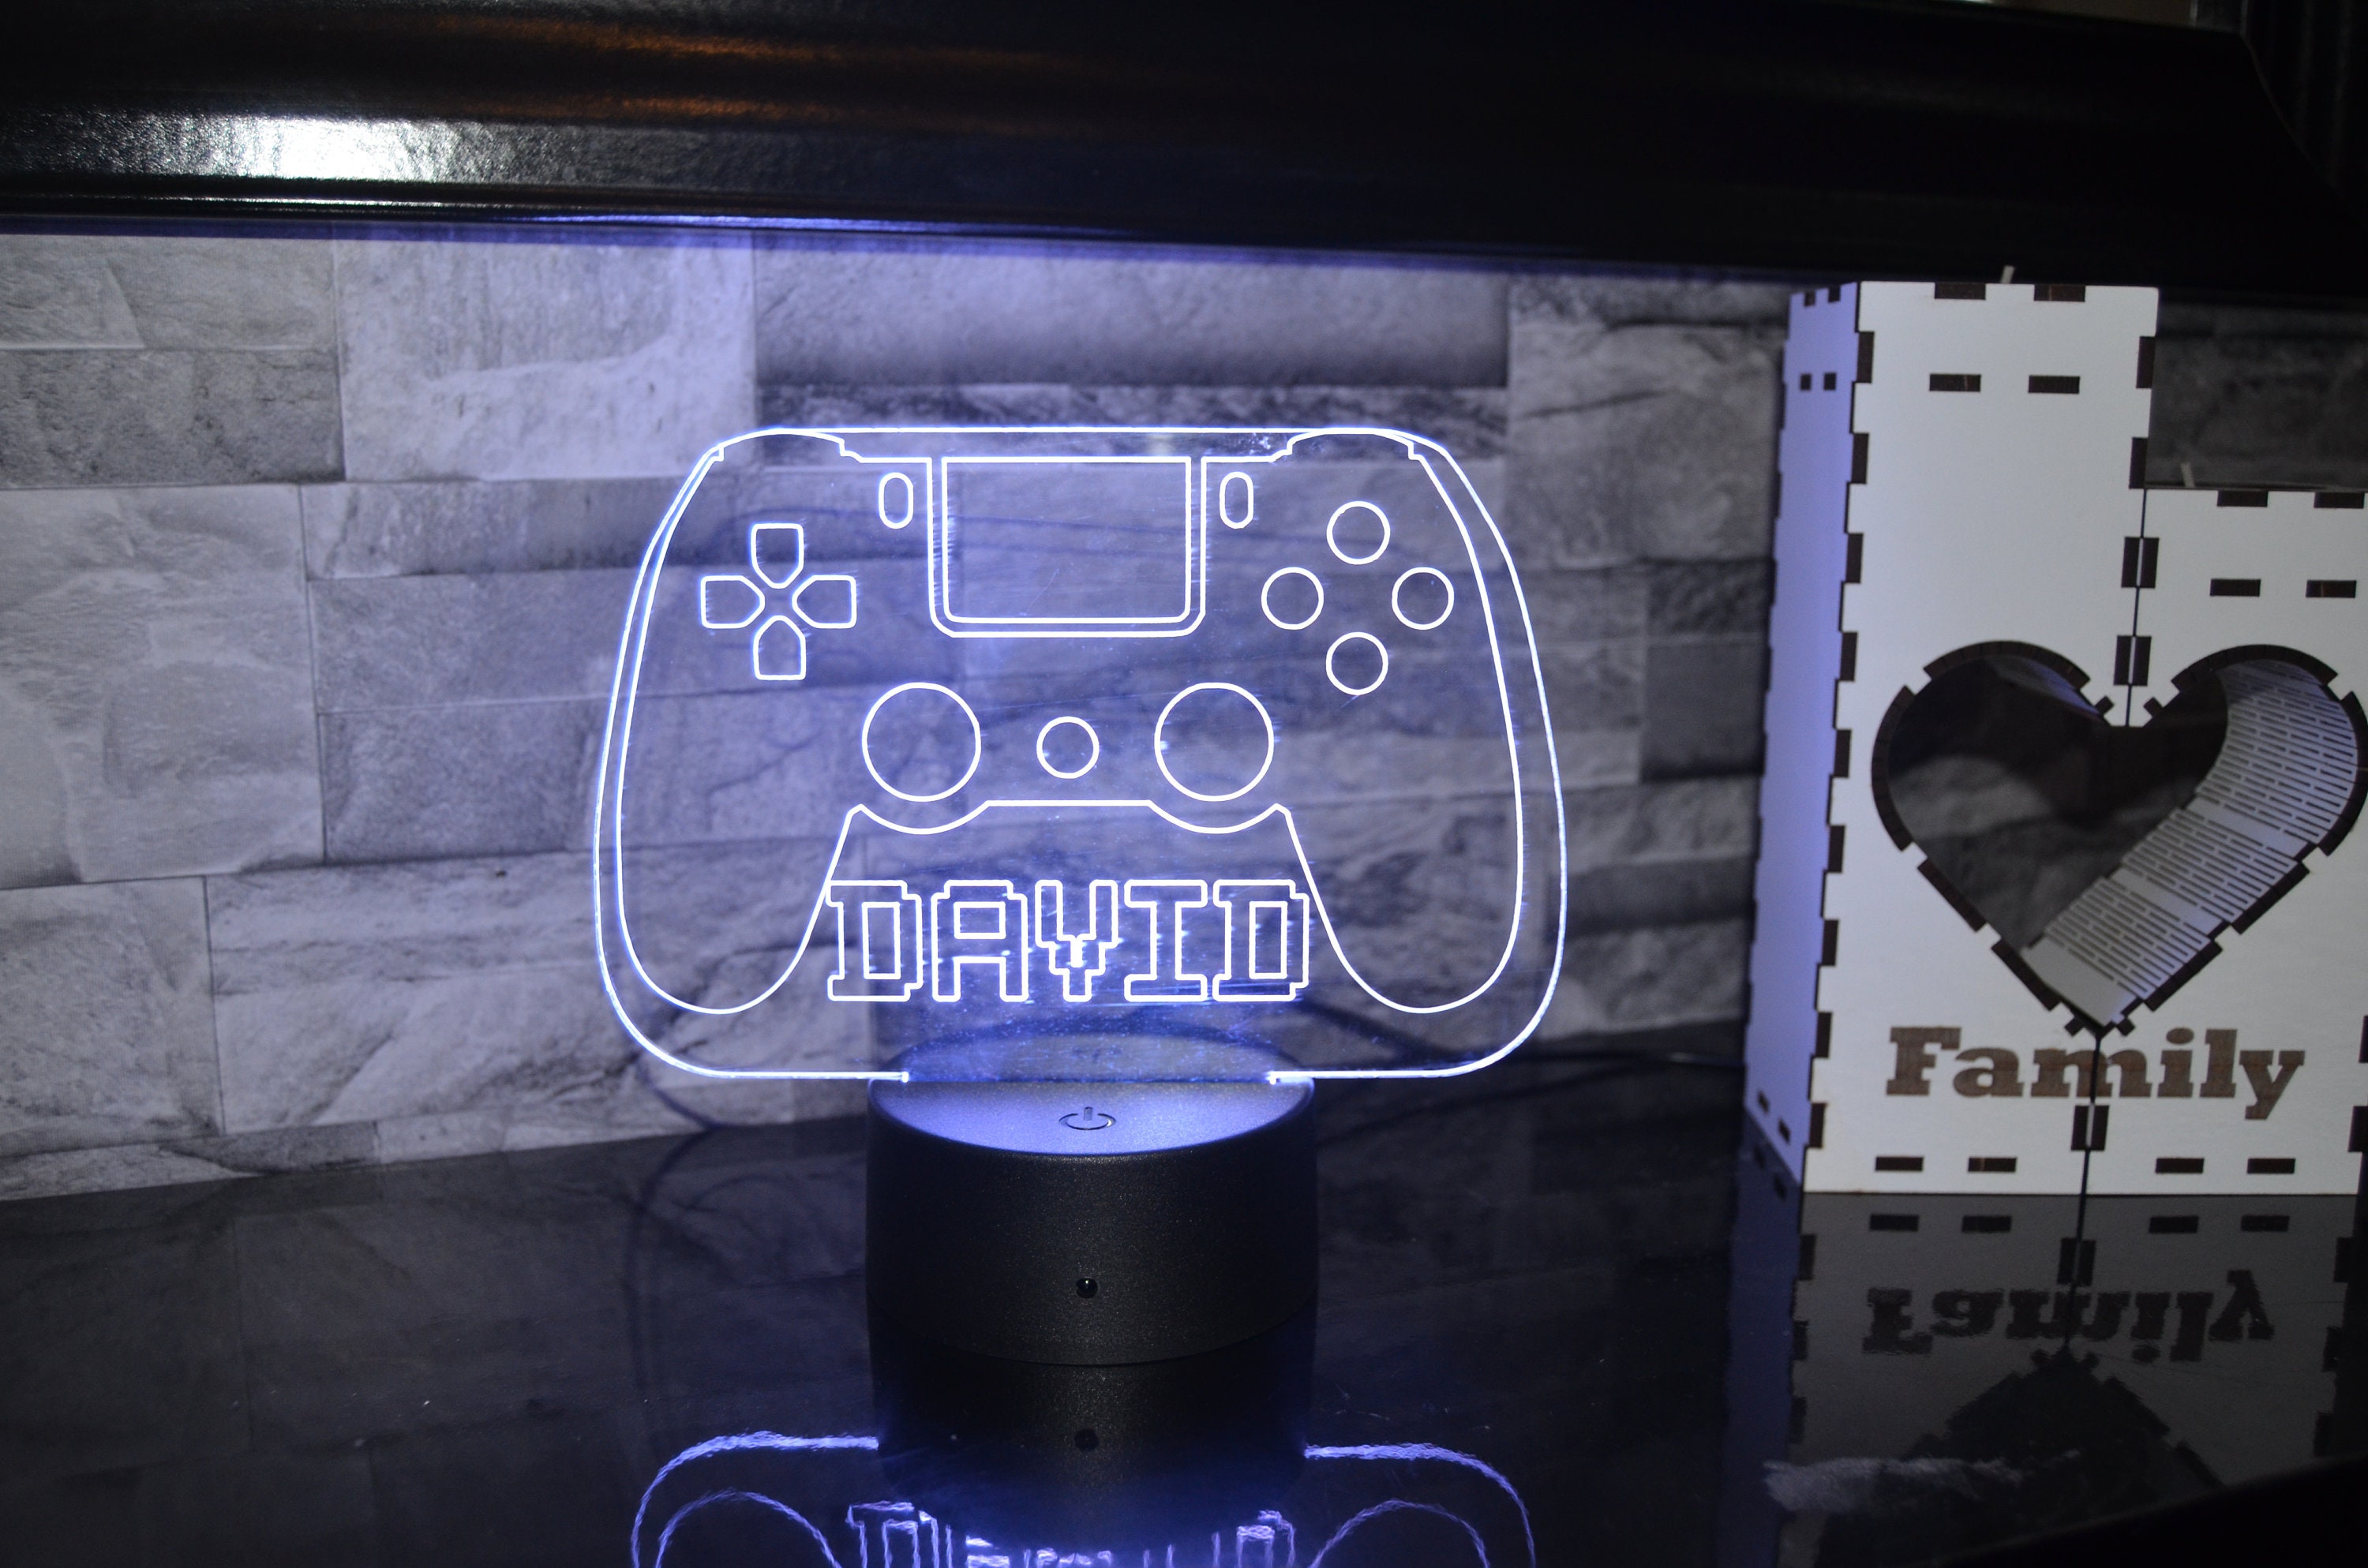 Veilleuse Manette PlayStation 4 : Lumière Originale pour Gamers